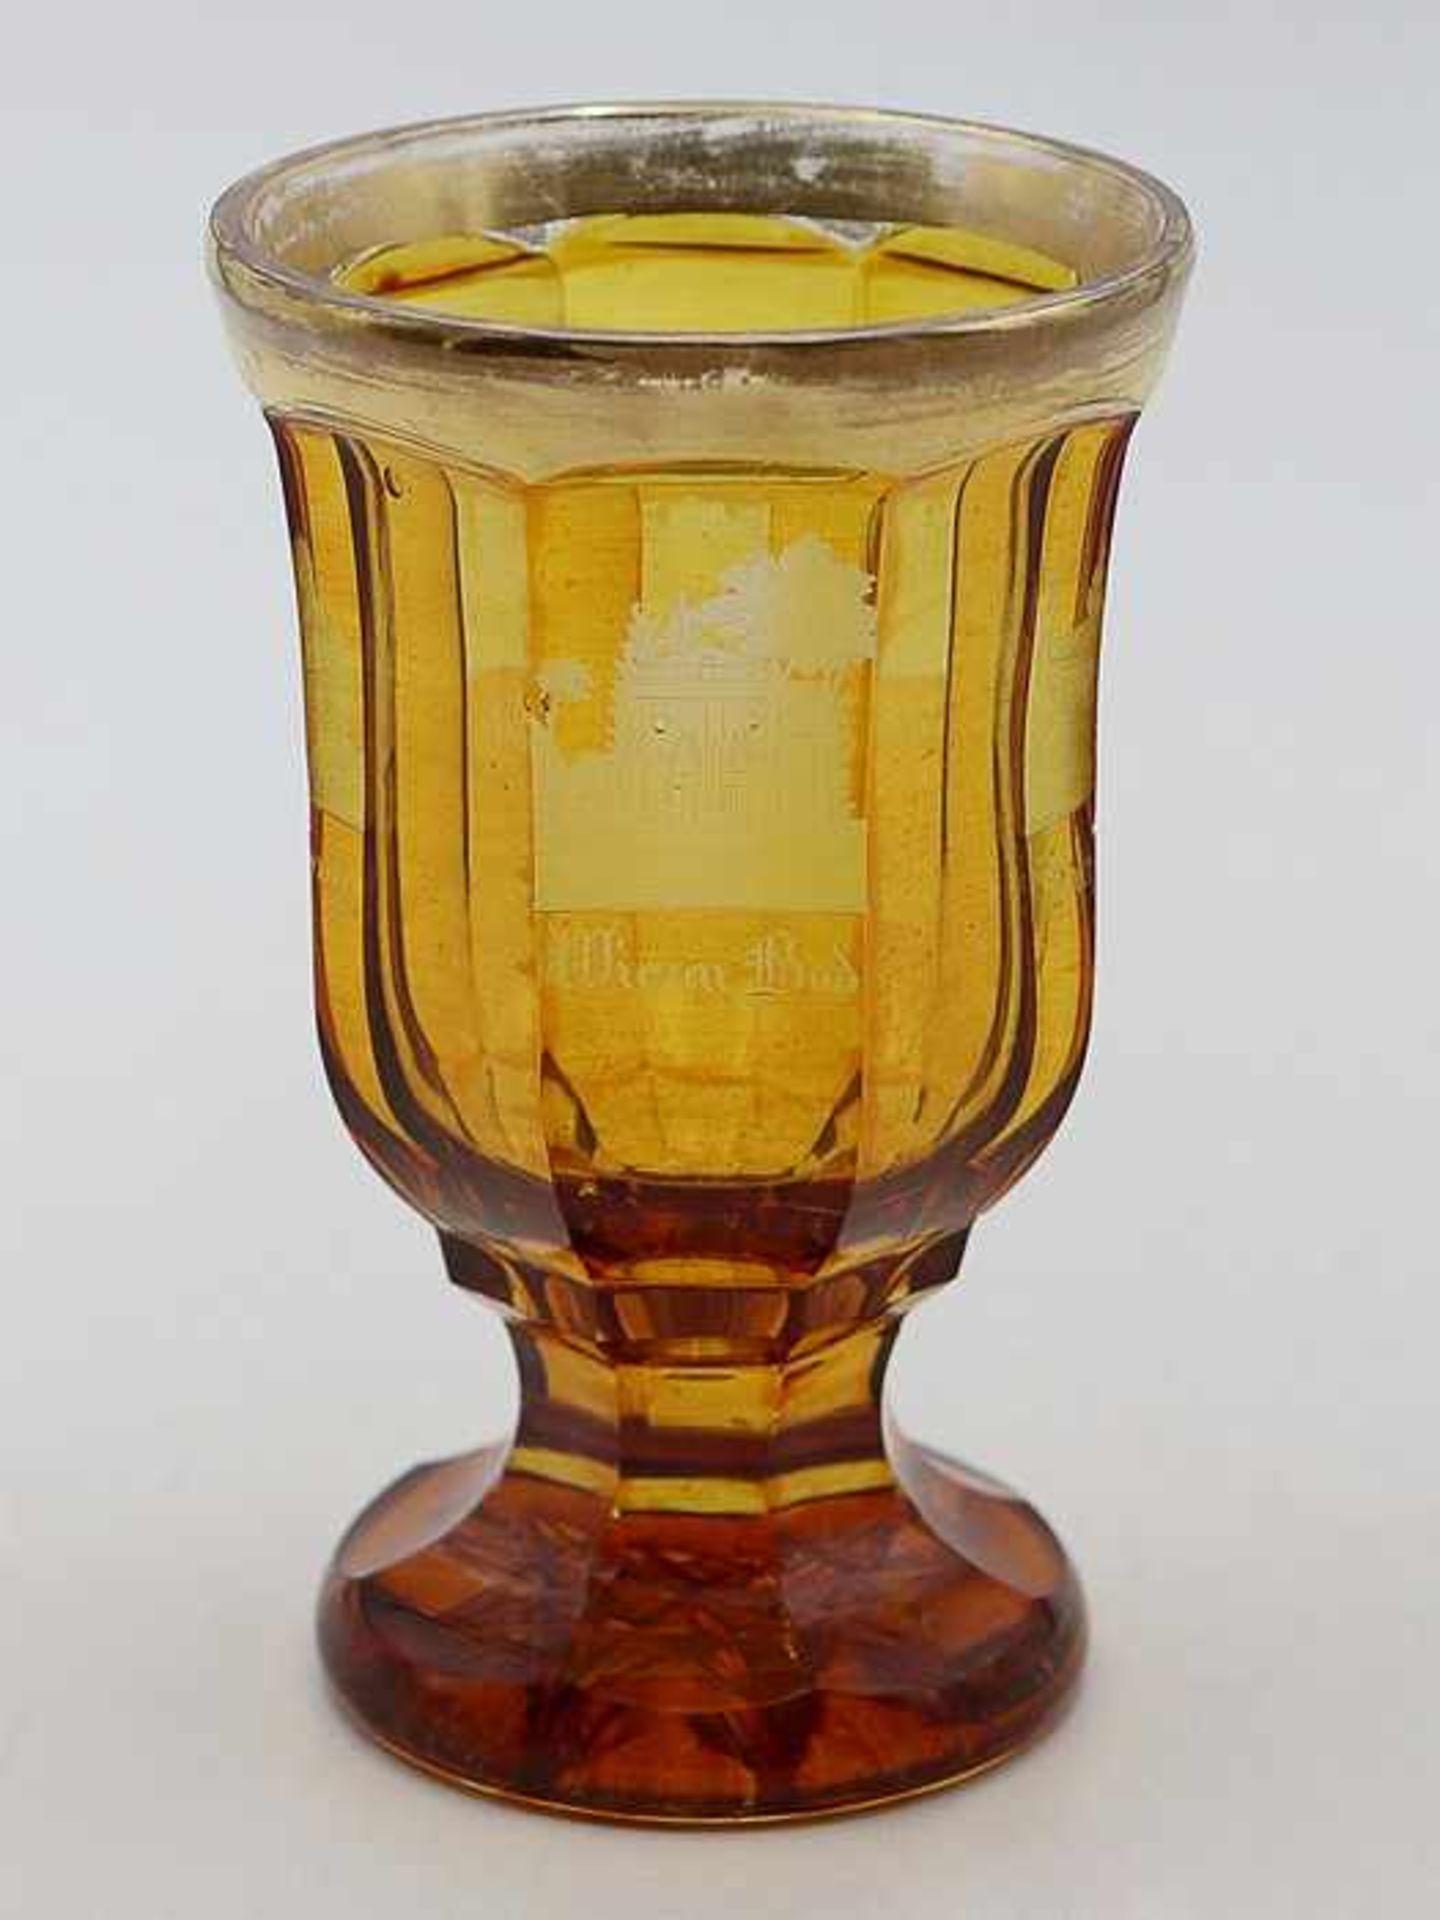 Bäderglas19. Jh., bernsteinfarbenes Glas, runder Stand m. aufwendigem Bodenstern, breiter fac. - Bild 4 aus 4